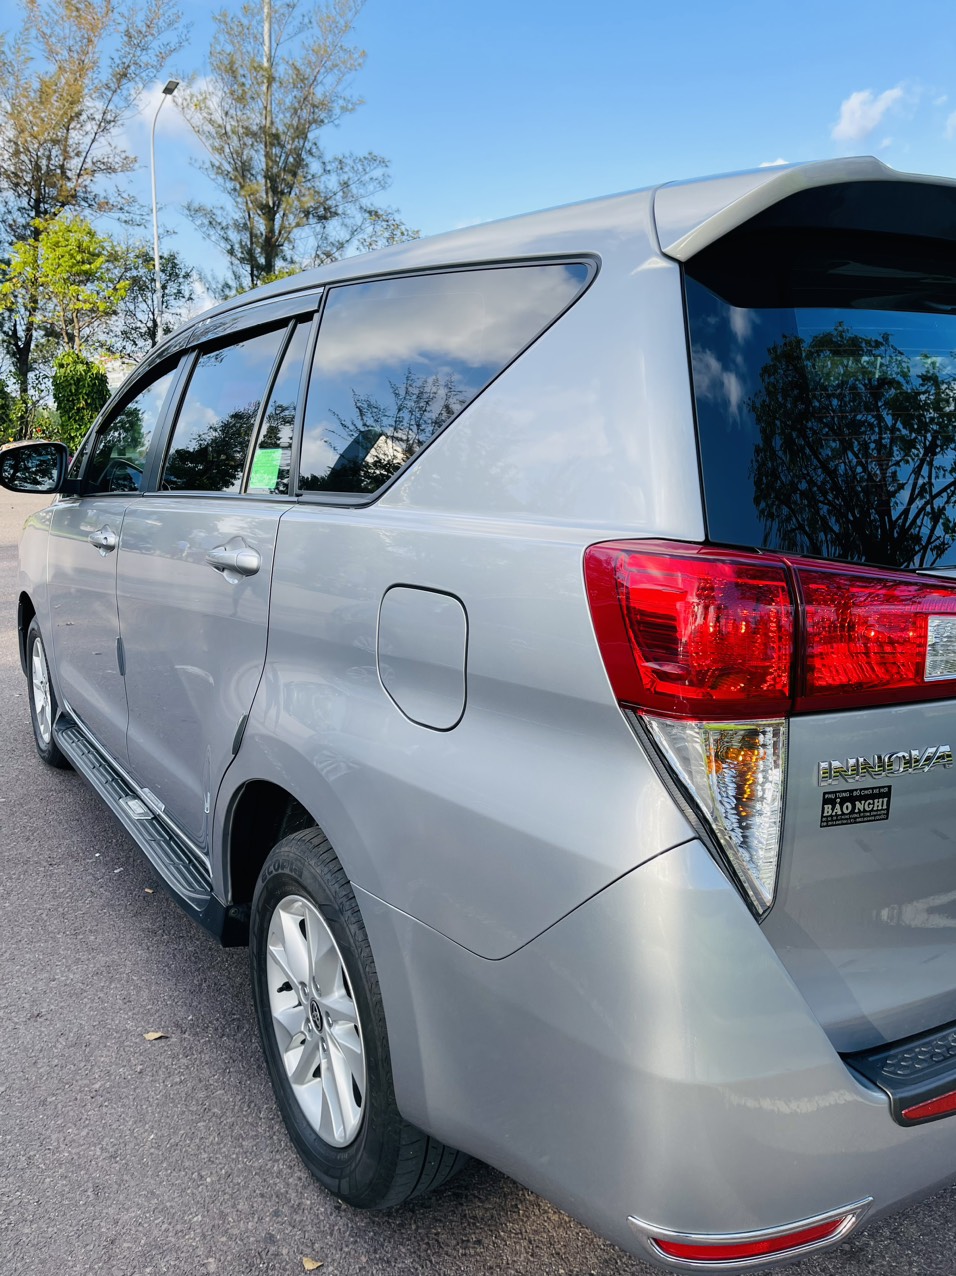 UUsed Car Dealer Trimap đang bán; Toyota Innova E 2.0 sx 2019, đăng ký 2020 một chủ mua mới đầu. -1